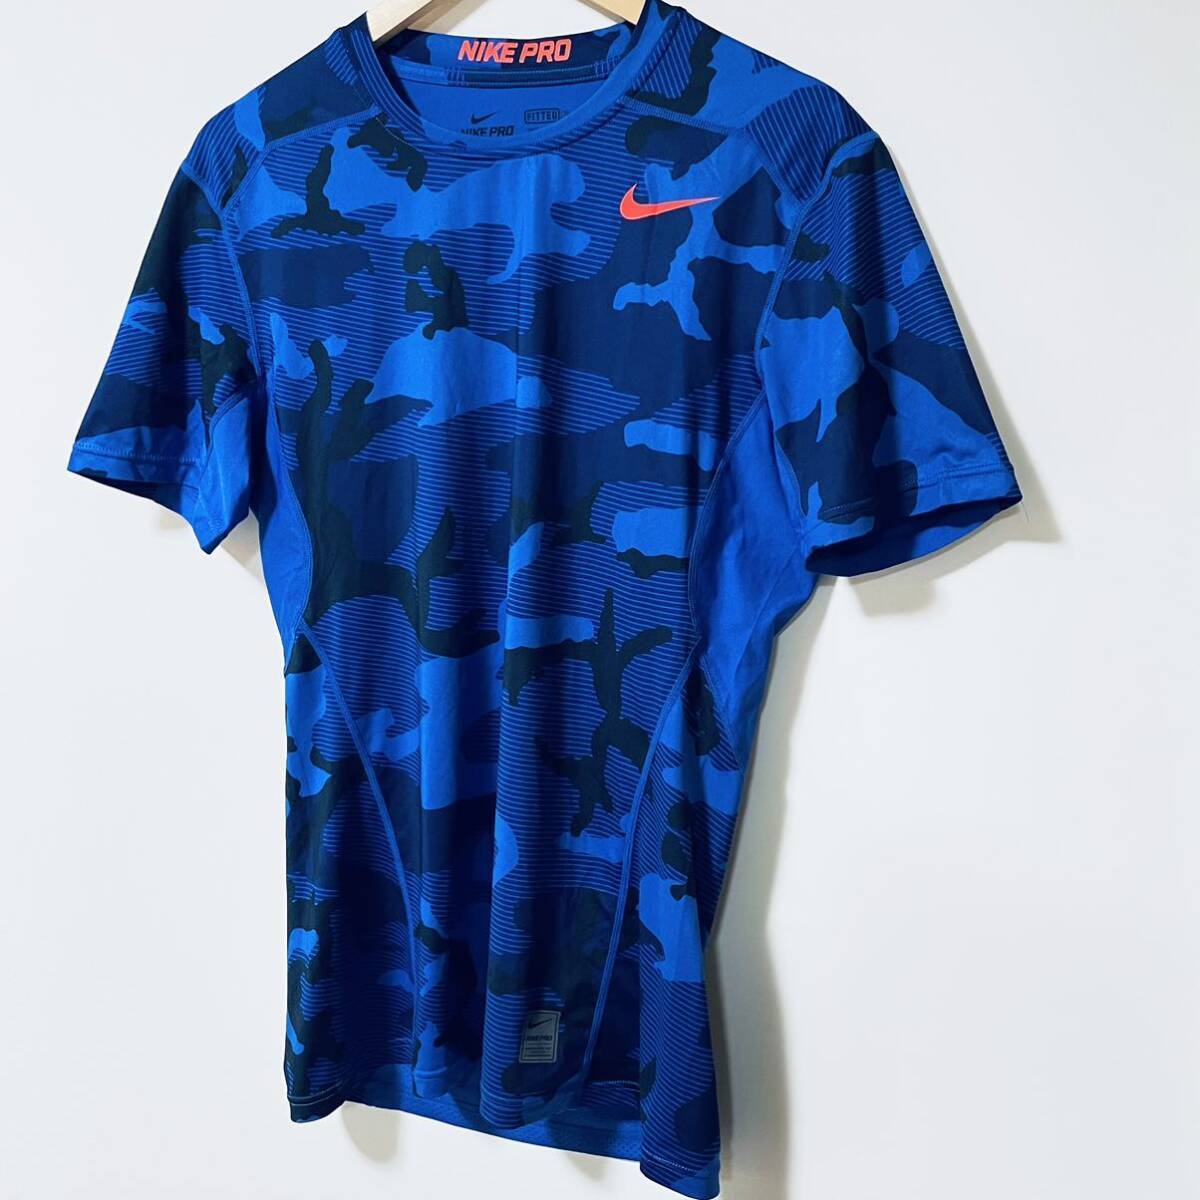 H7887gg NIKE PRO（ナイキプロ） サイズL 半袖Tシャツ 青 ブルー ネイビー メンズ スポーツウエア Dri-FIT （ドライフィット） 通気性の画像4